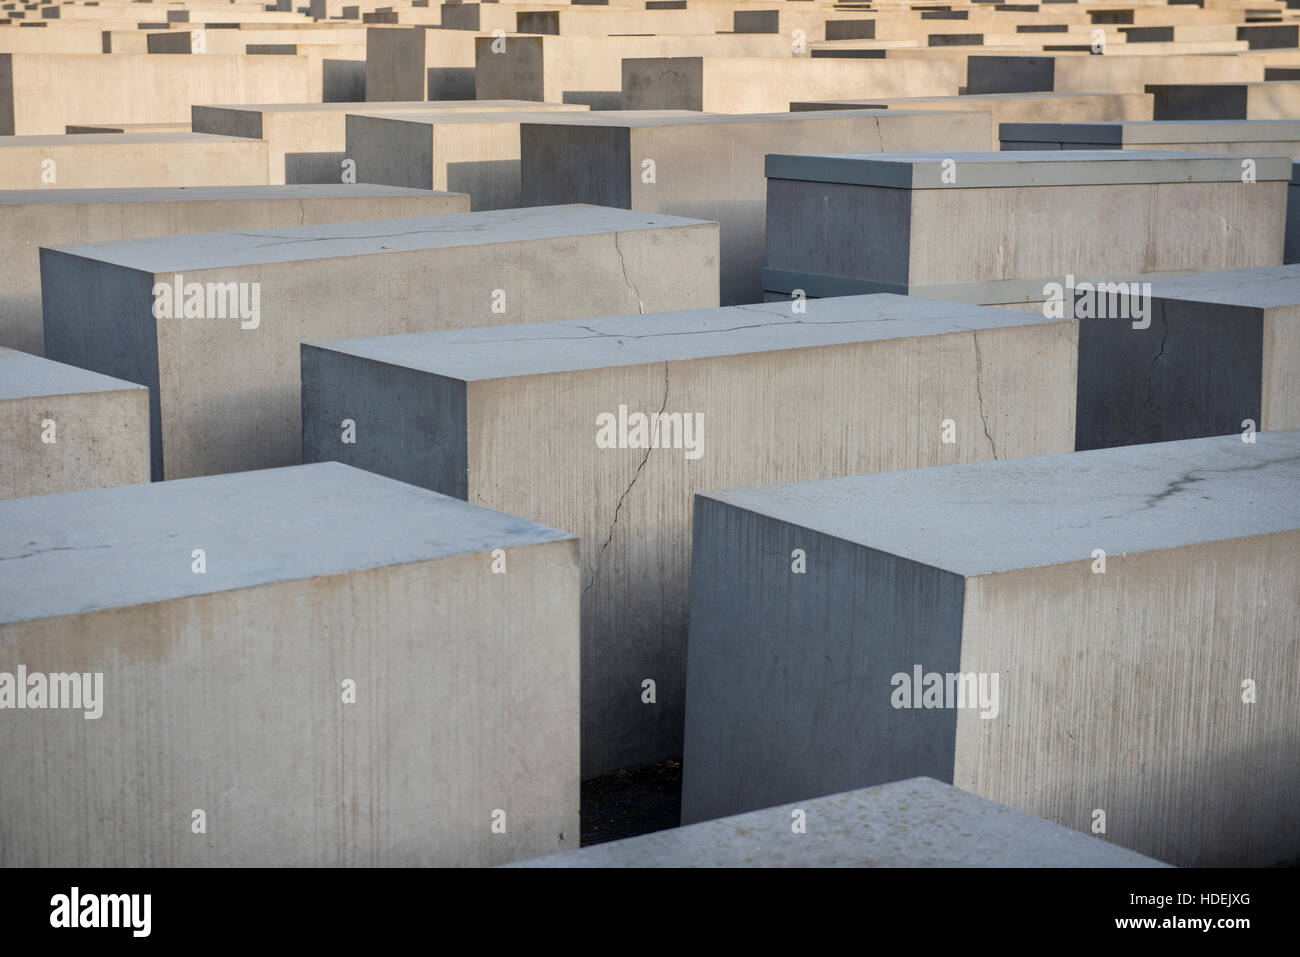 Das Denkmal für die ermordeten Juden Europas (auch bekannt als das Holocaust-Mahnmal) in Berlin, Deutschland Stockfoto